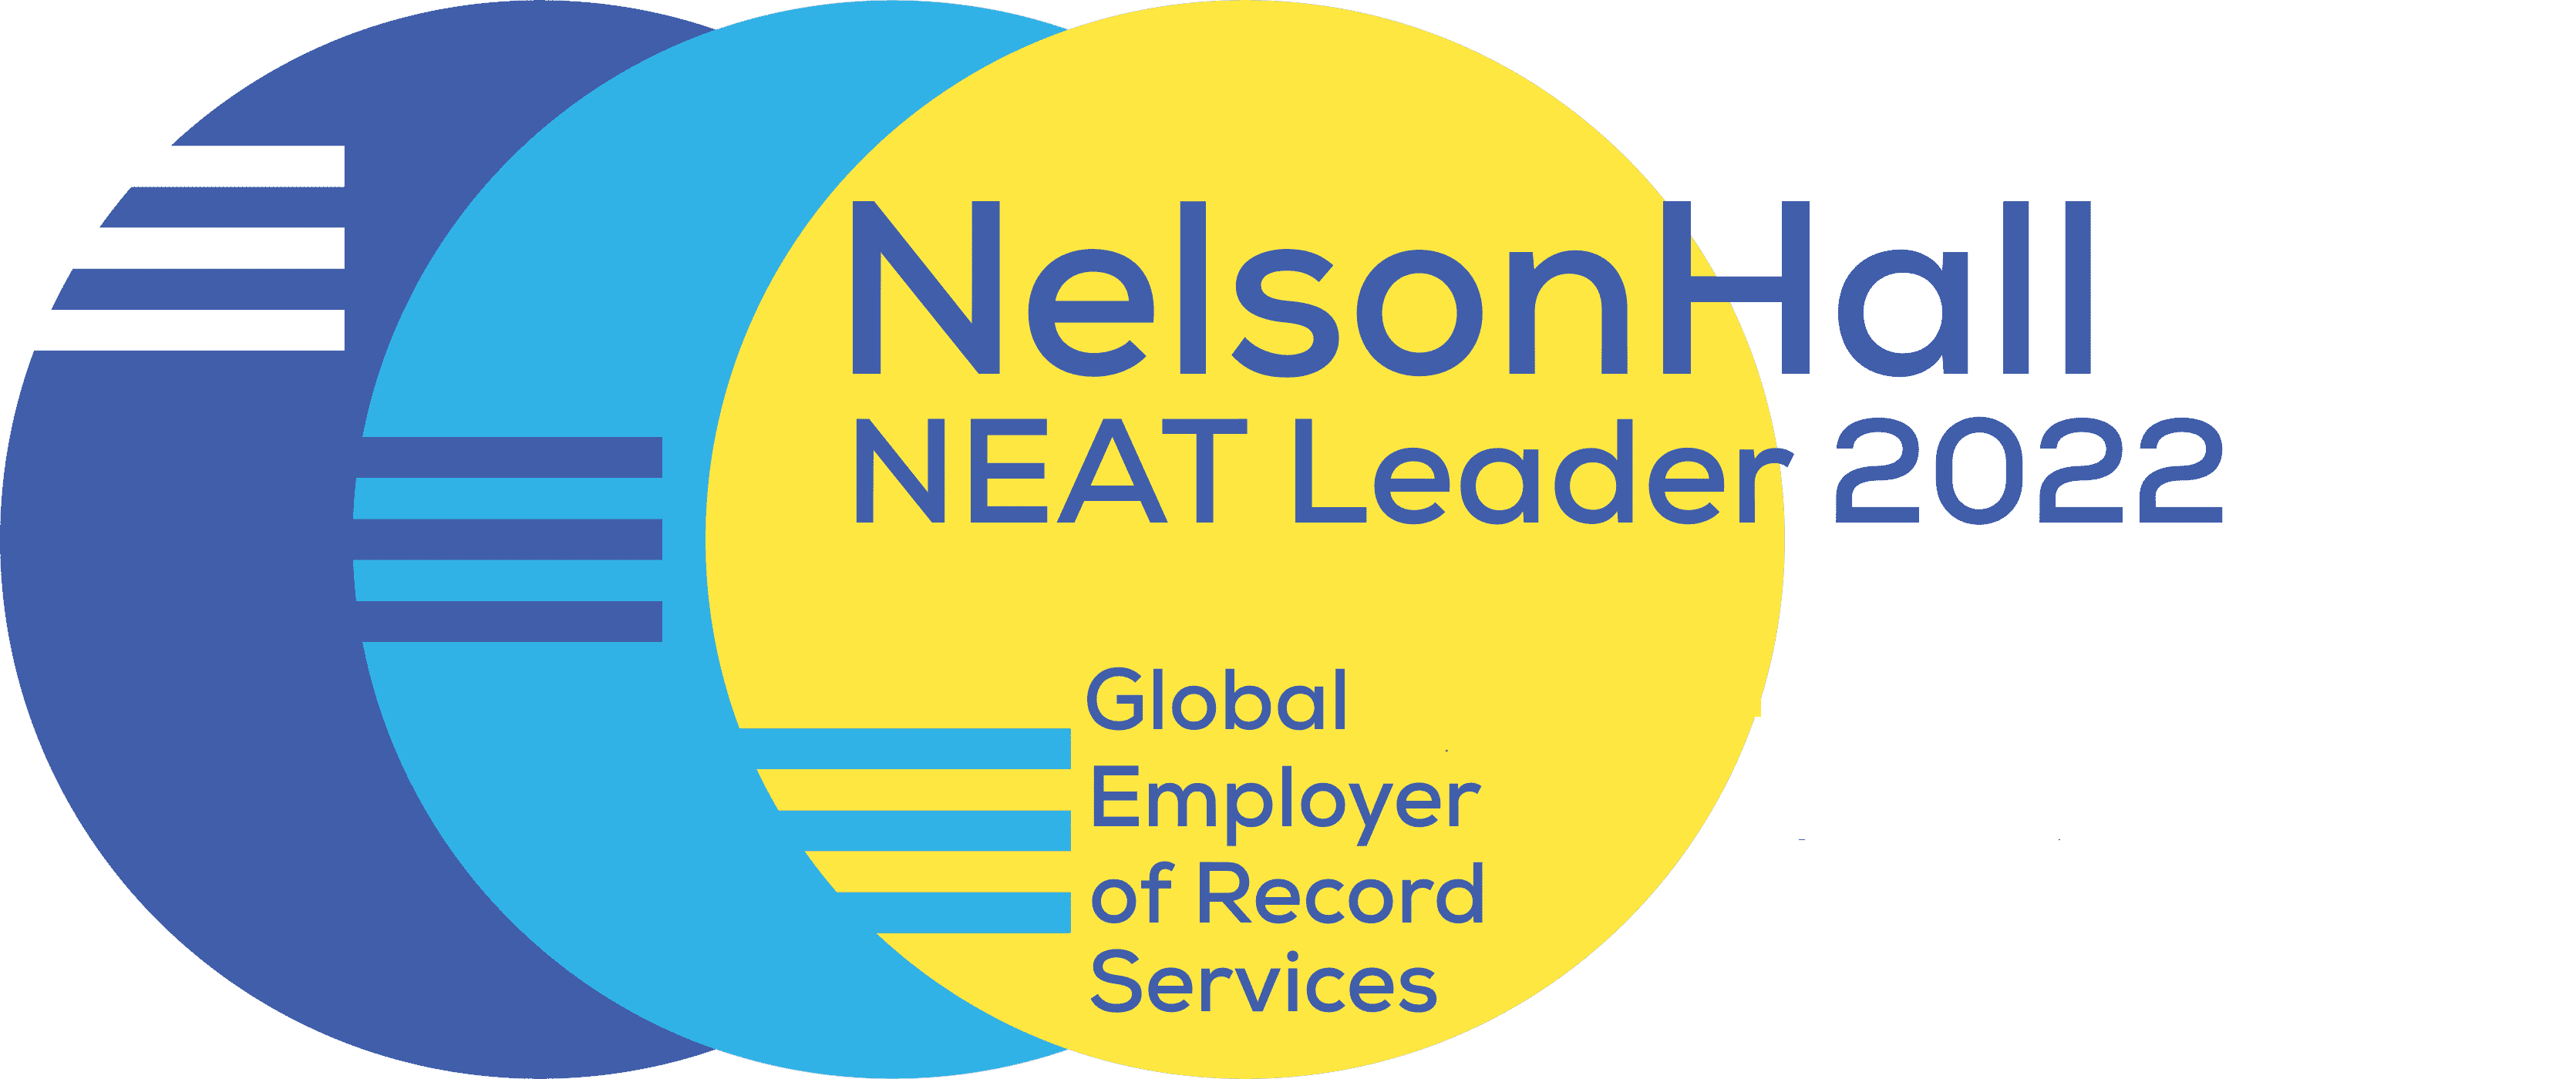 NelsonHall – שינוי דרך תובנות